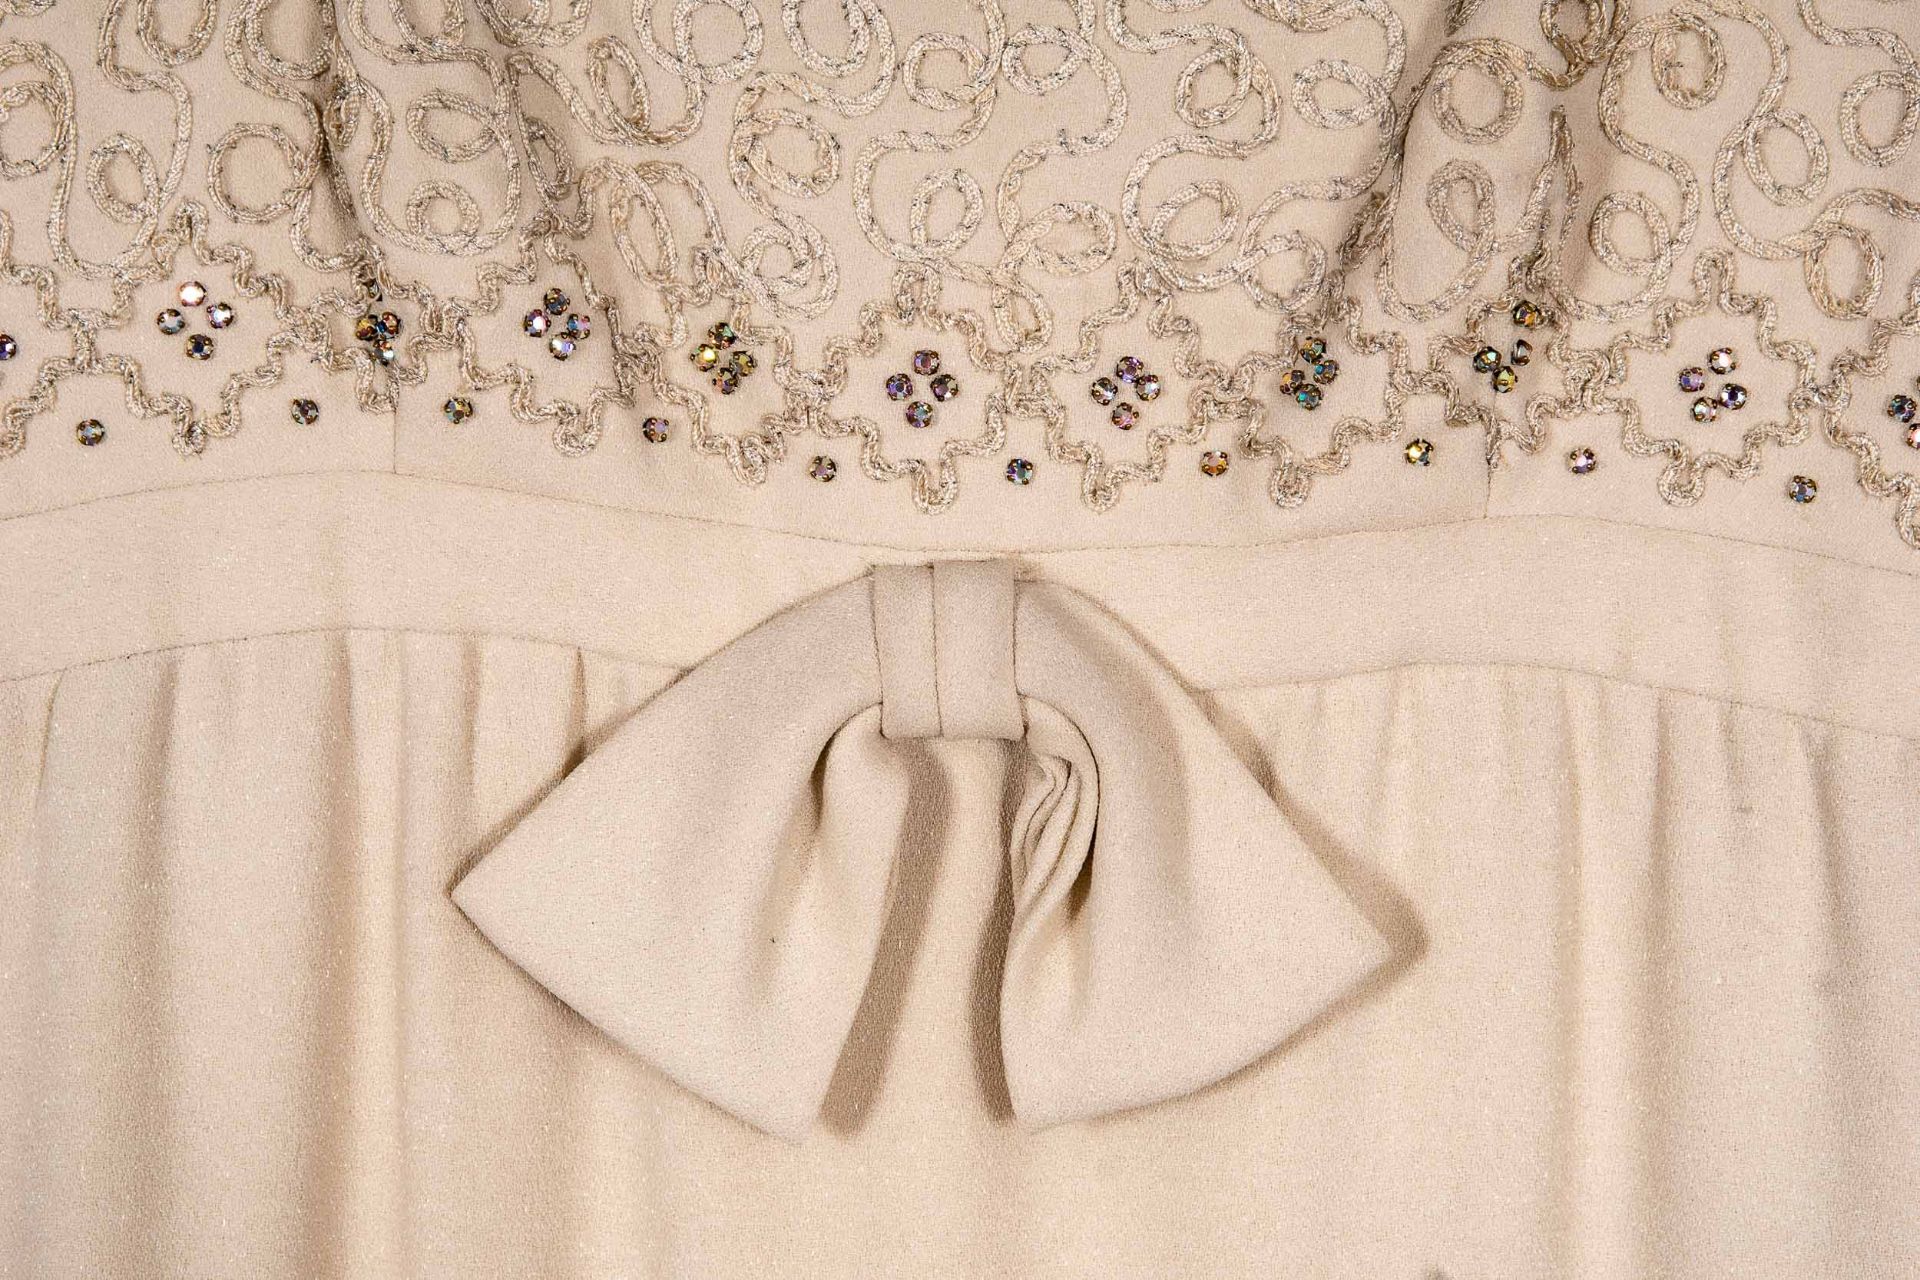 Schmales Abendkleid, ärmellos, mit tiefem Ausschnitt in beige, schwerem Jersey-Stoff mit Lurexfäden - Image 3 of 4